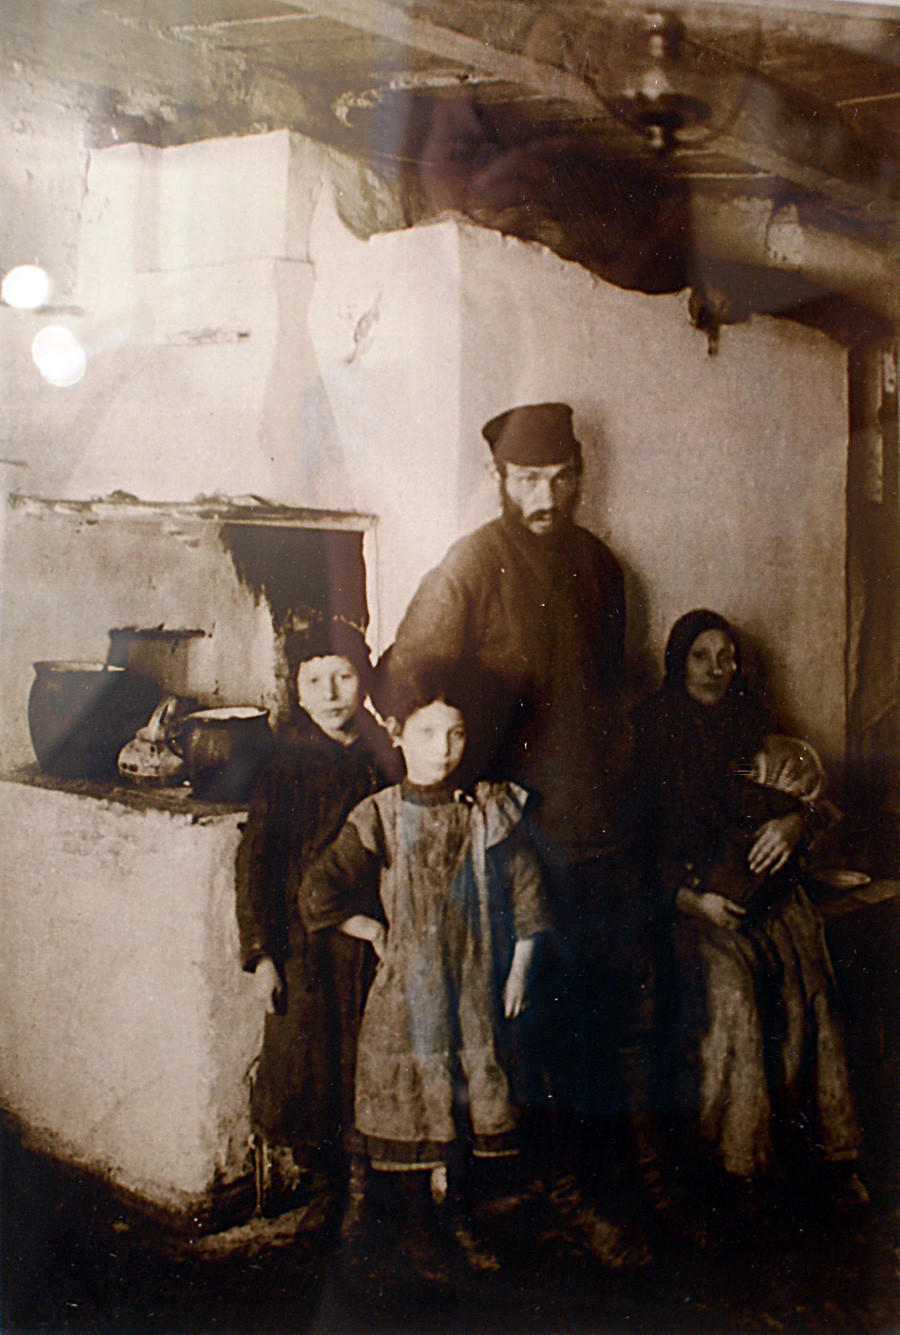 Židovska obitelj, 1909.

